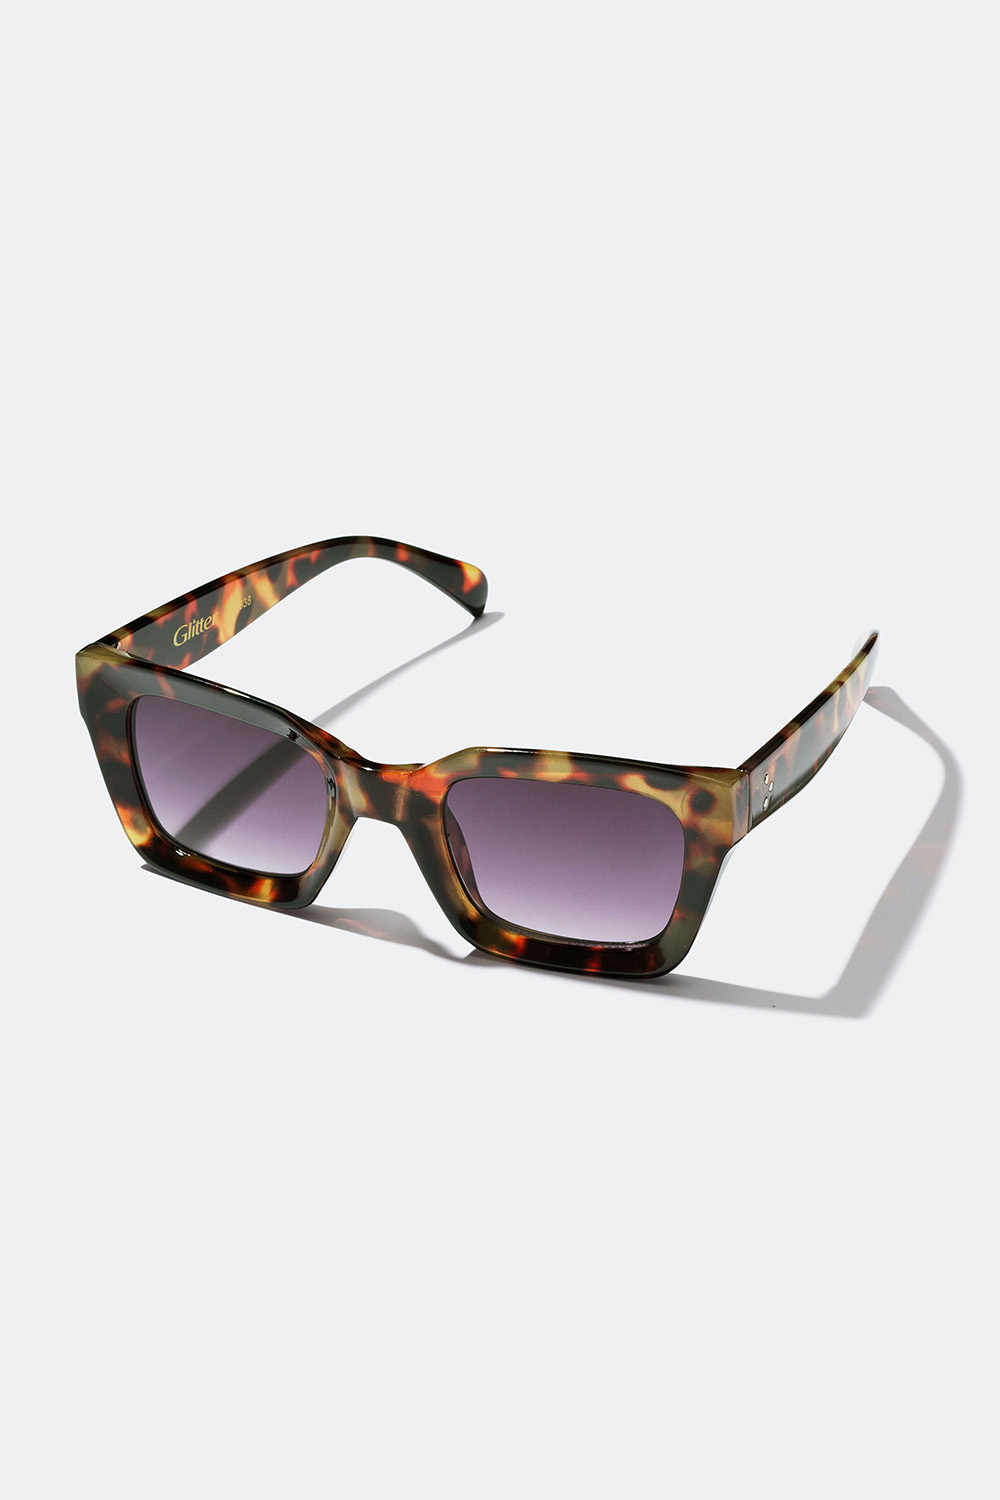 nedsænket dansk Aktuator Shop solbriller med en firkantet form på Glitter.dk!